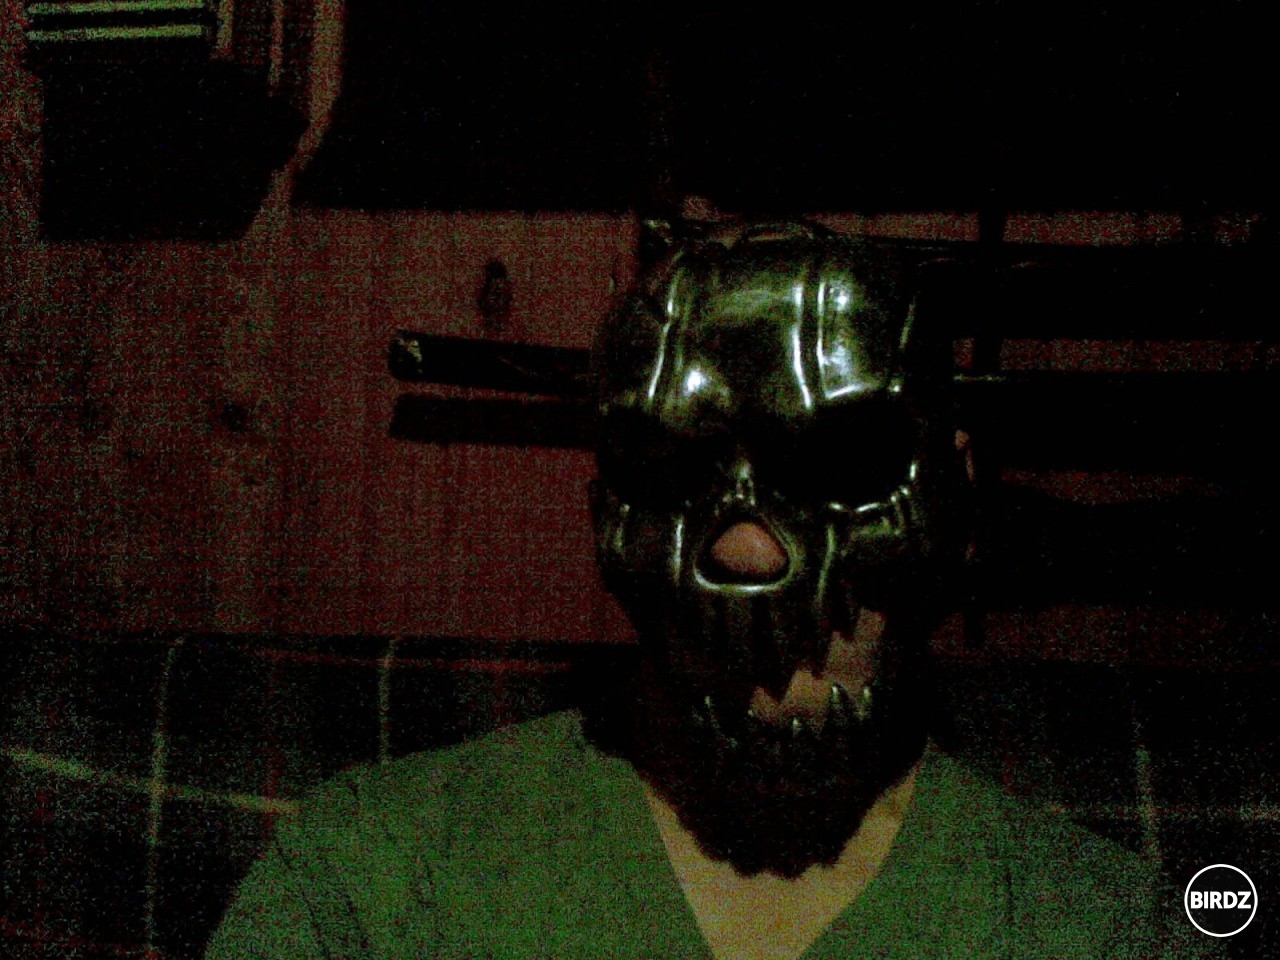 Ja v takej novej maske od kamaráta z Popradu hehe!